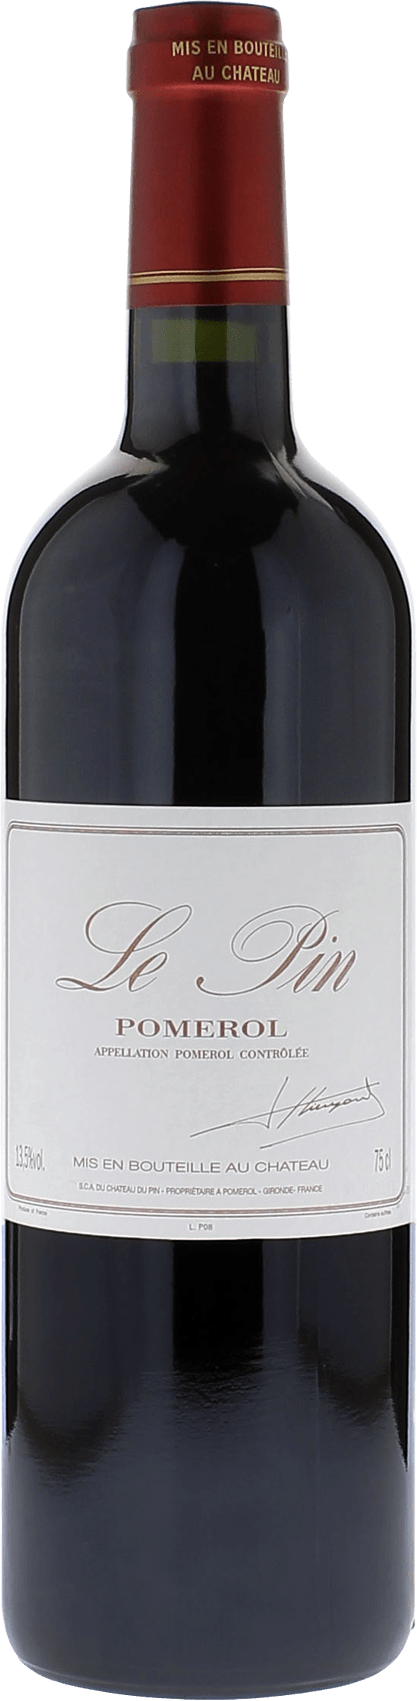 Le pin 2016  Pomerol, Bordeaux rouge